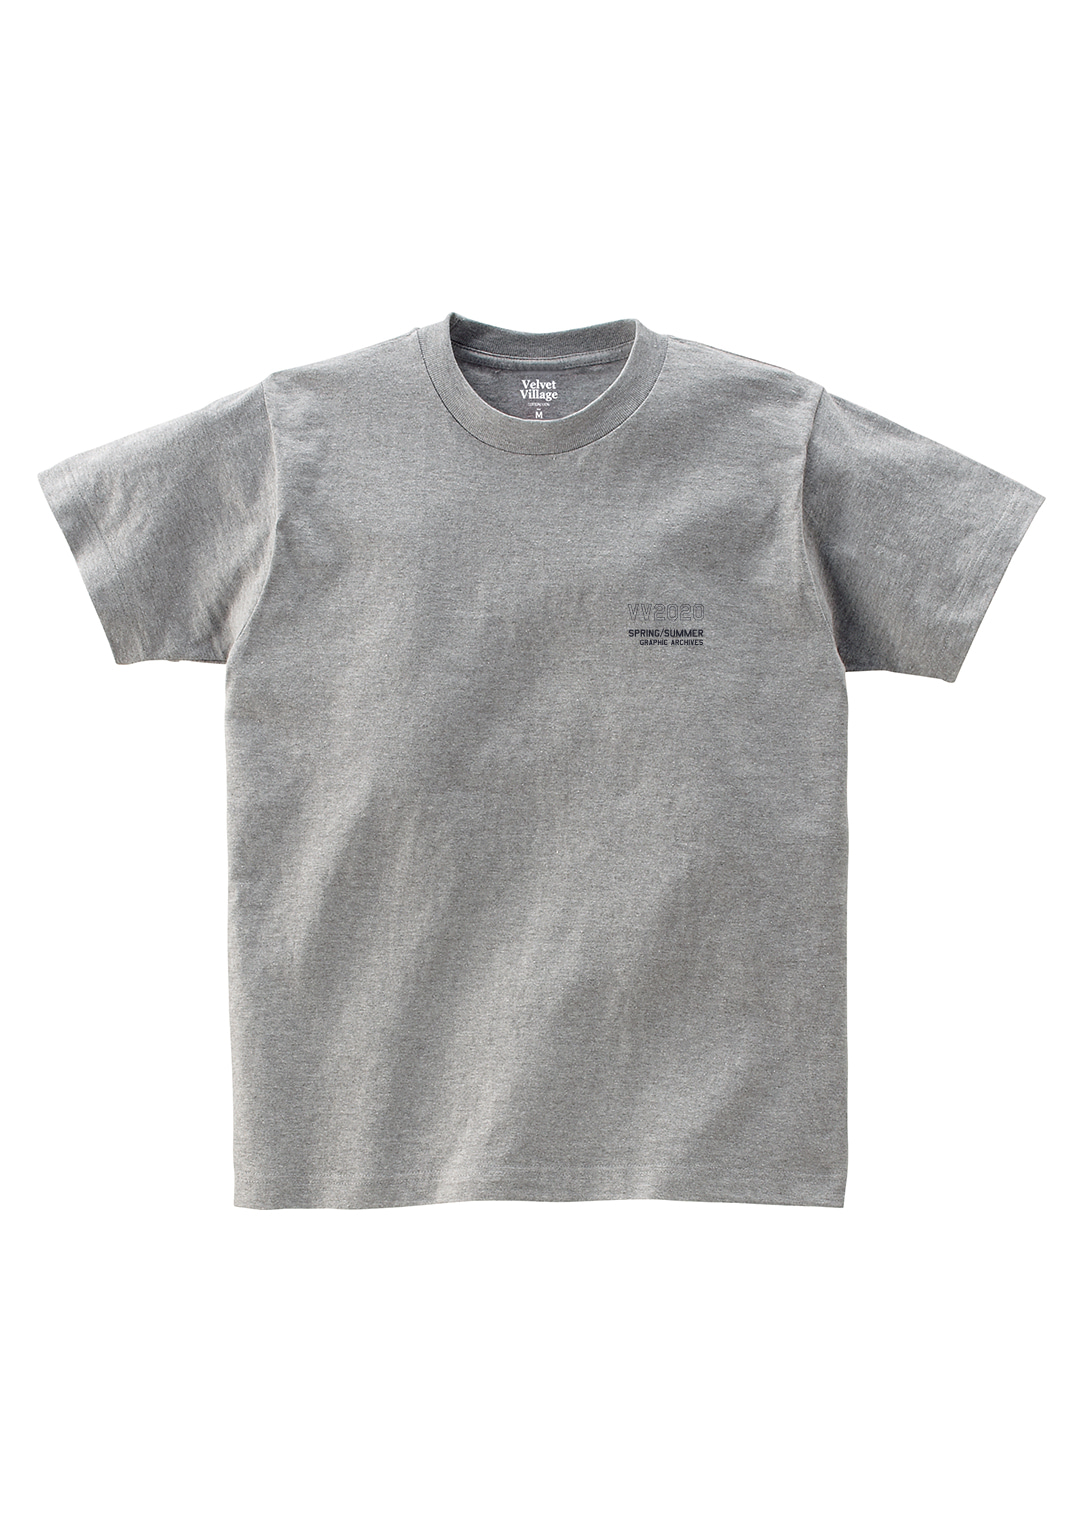 VV2020 T-shirt (Grey)